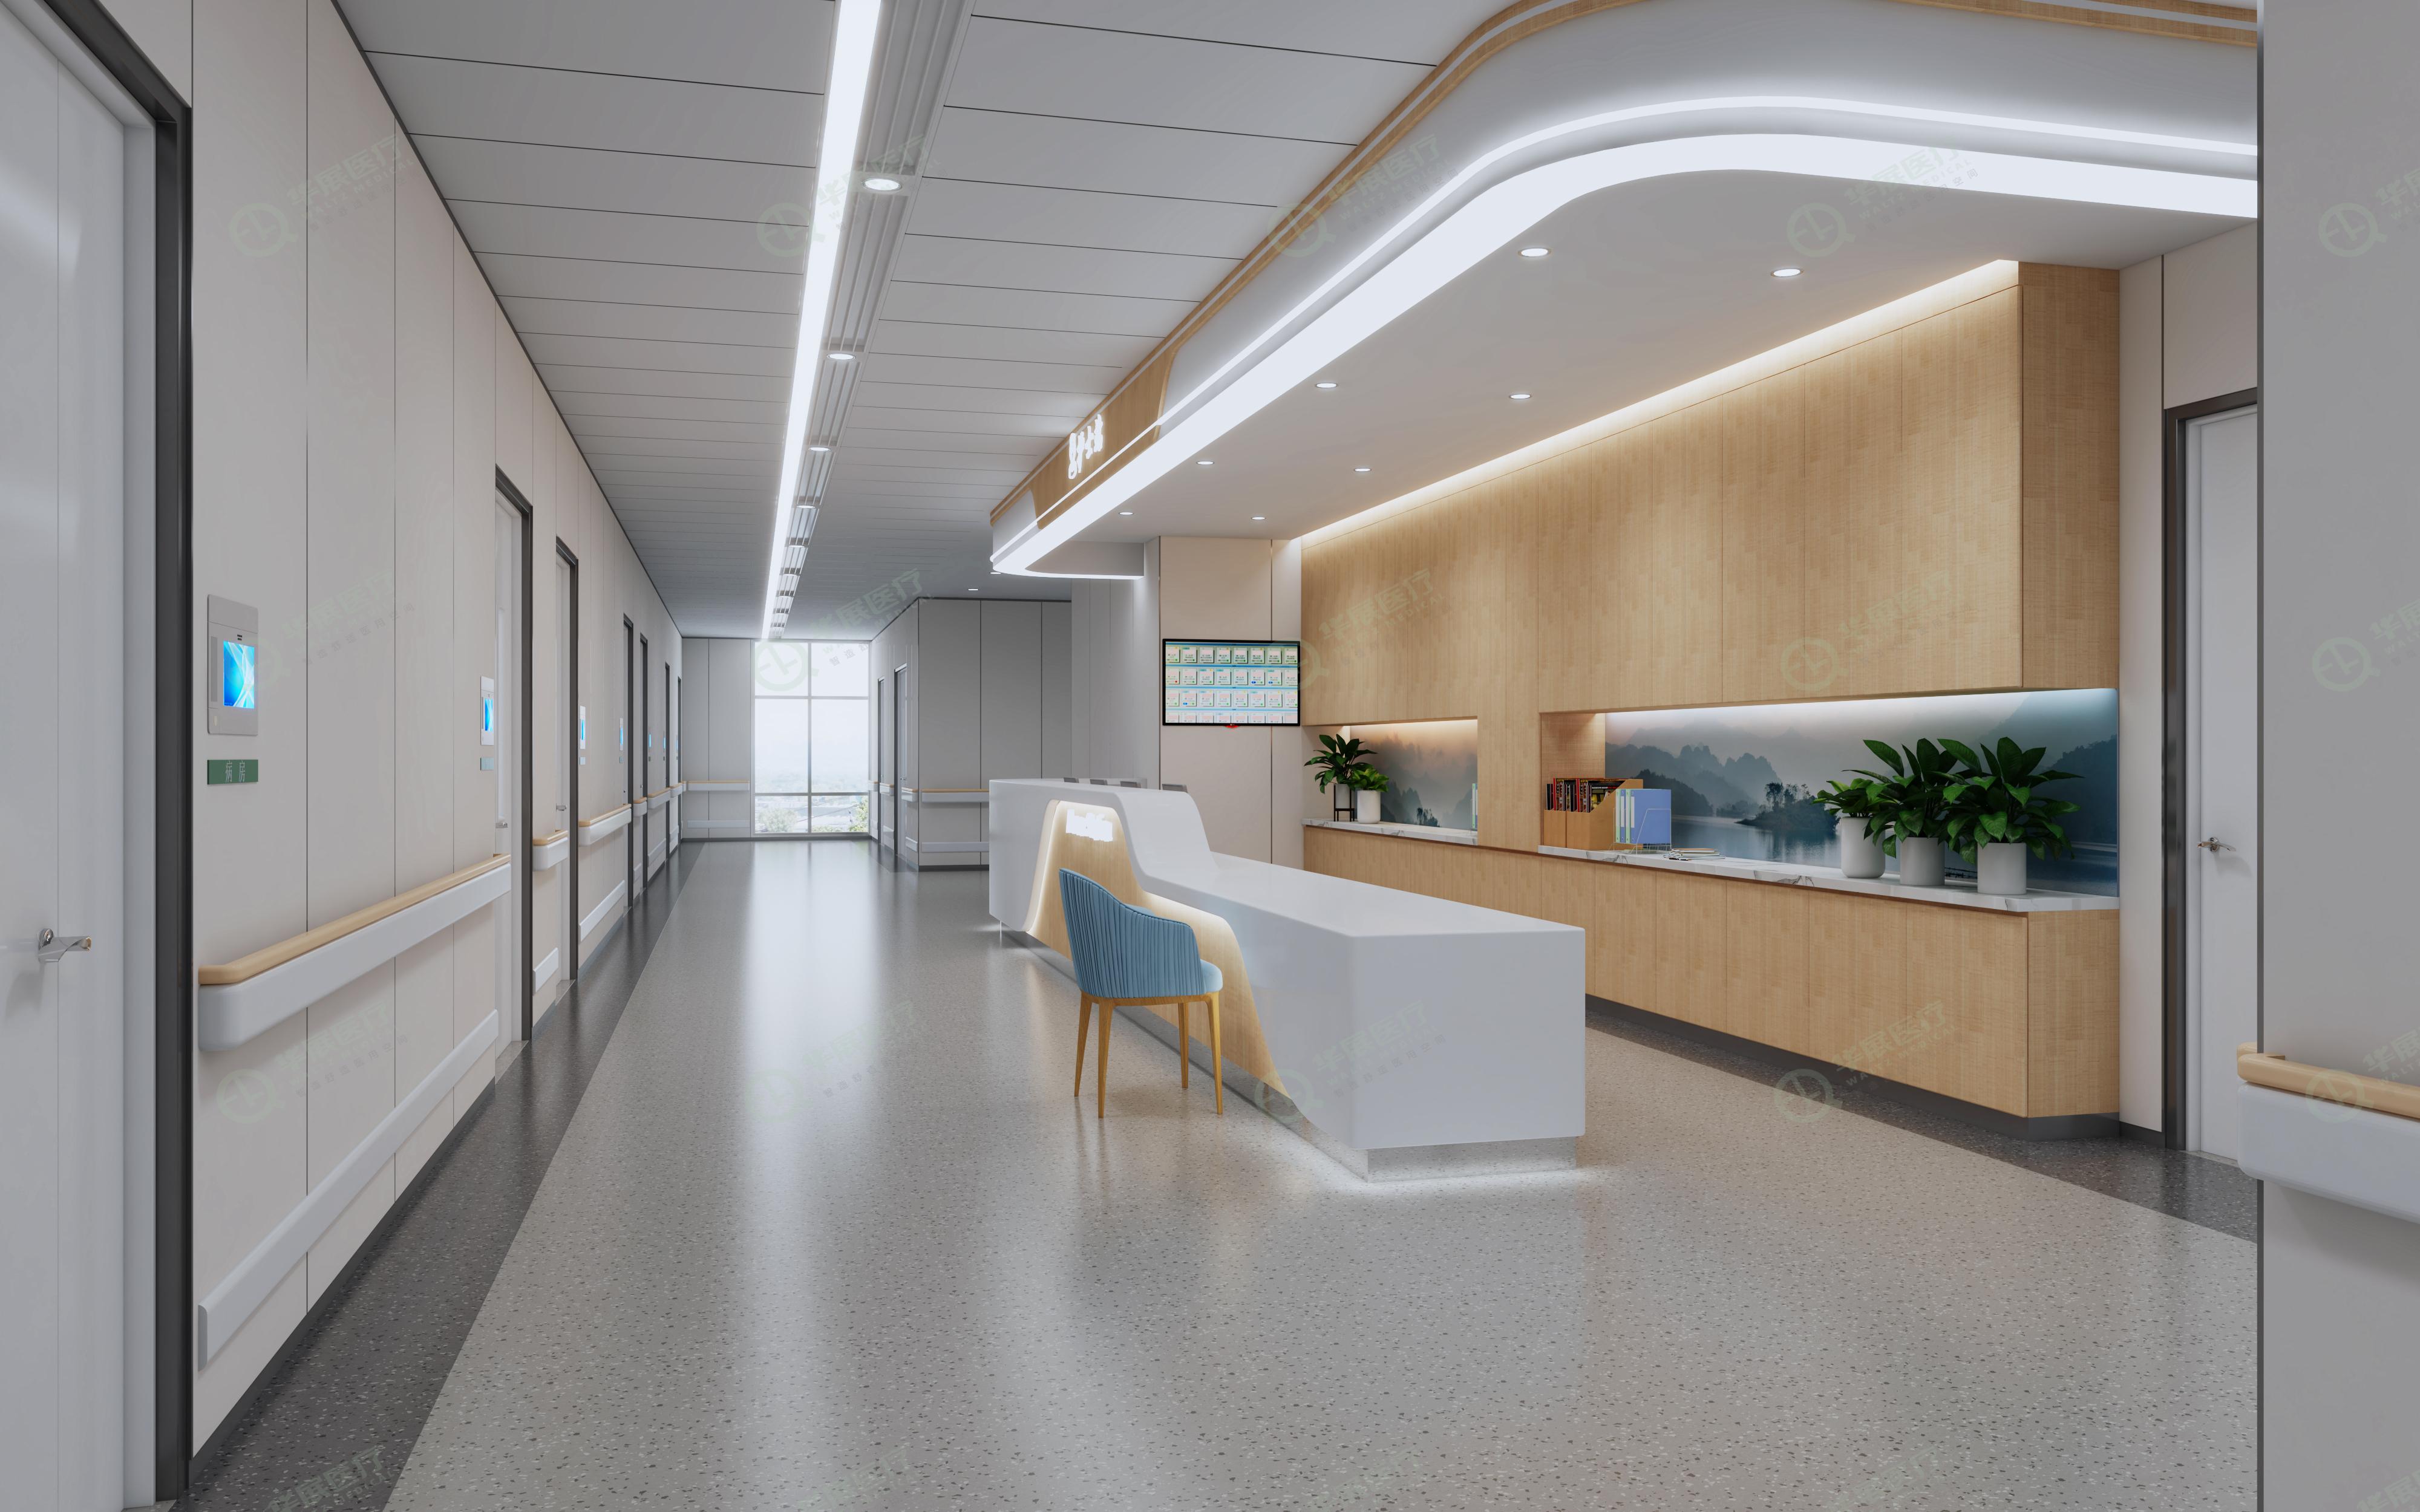 住院部护士站效果图那么,一款设计优雅,功能性强的护士站应用到实际